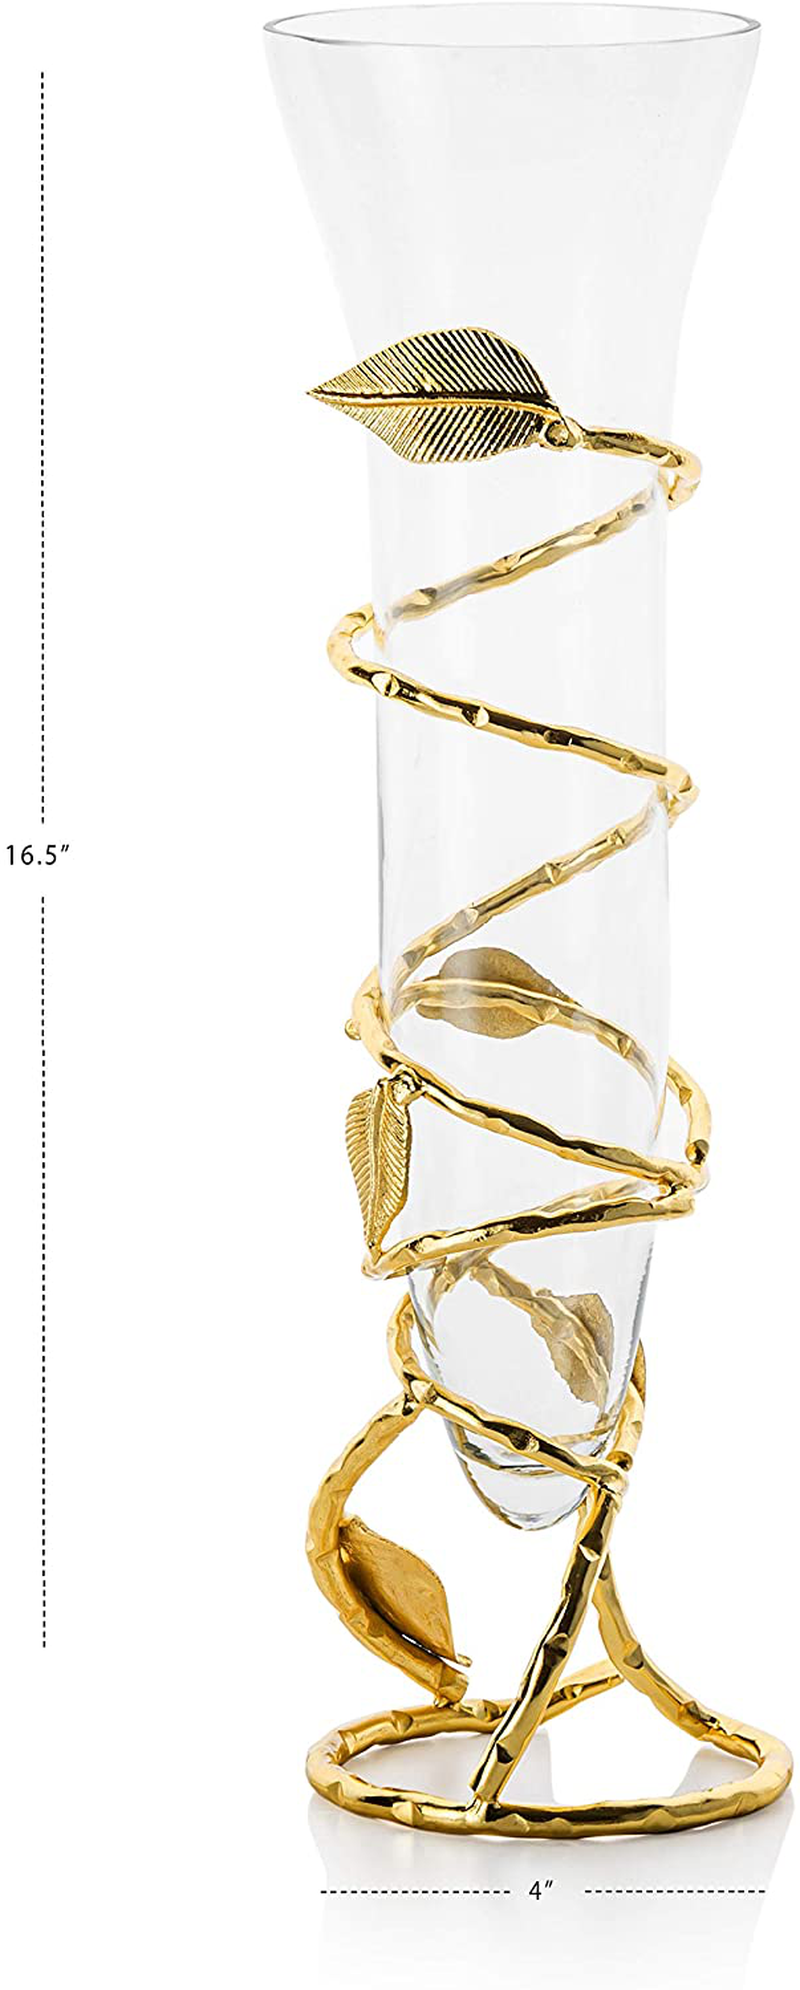 Clear Glass Vase with Gold Leaf Design Base-Measures: 16" H